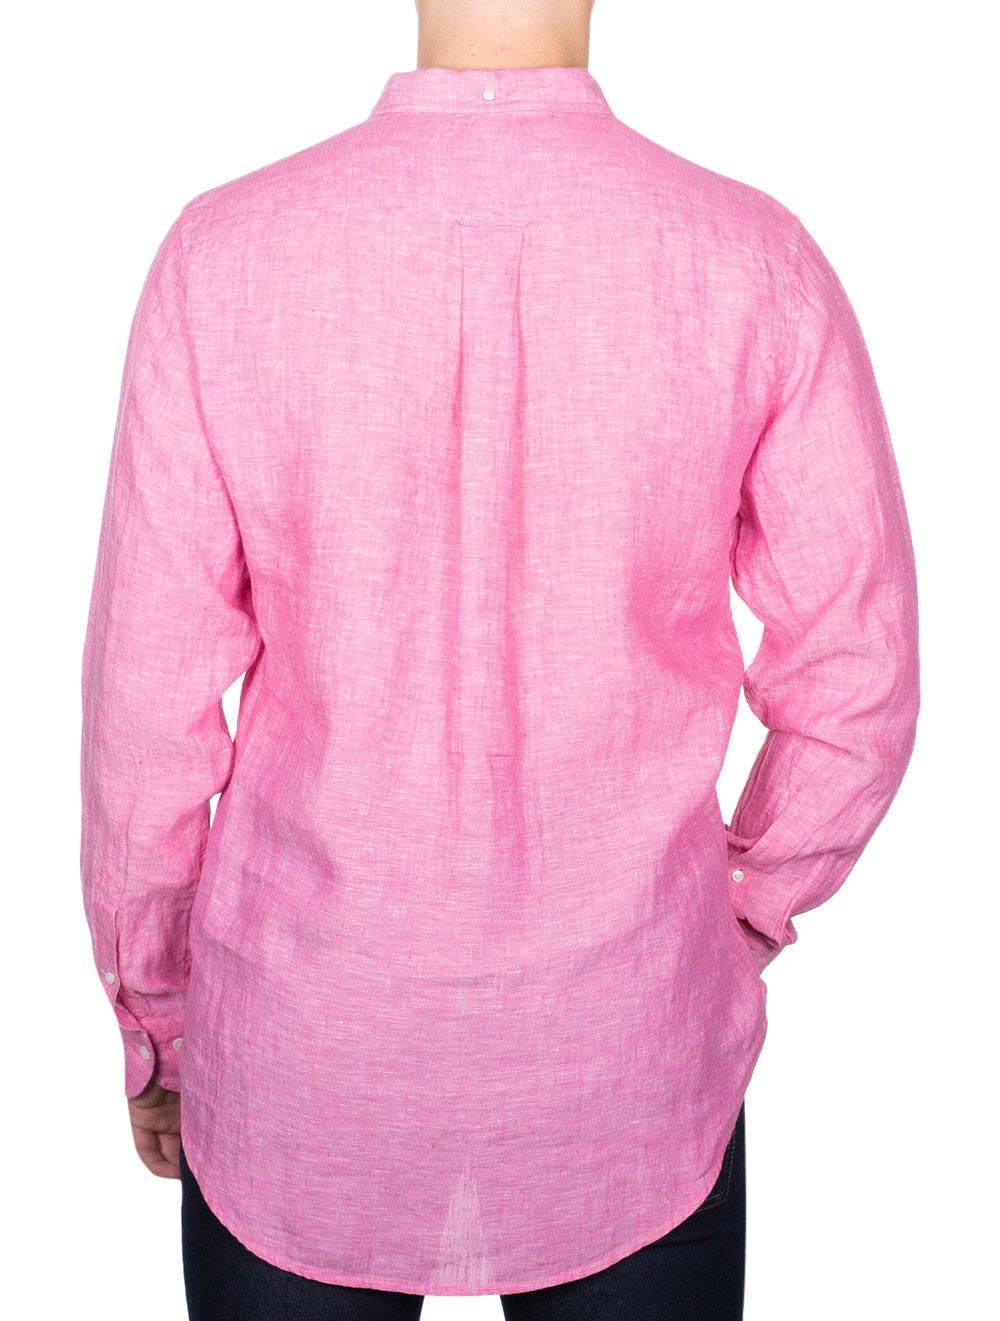 Regular Linen Shirt Perky Pink